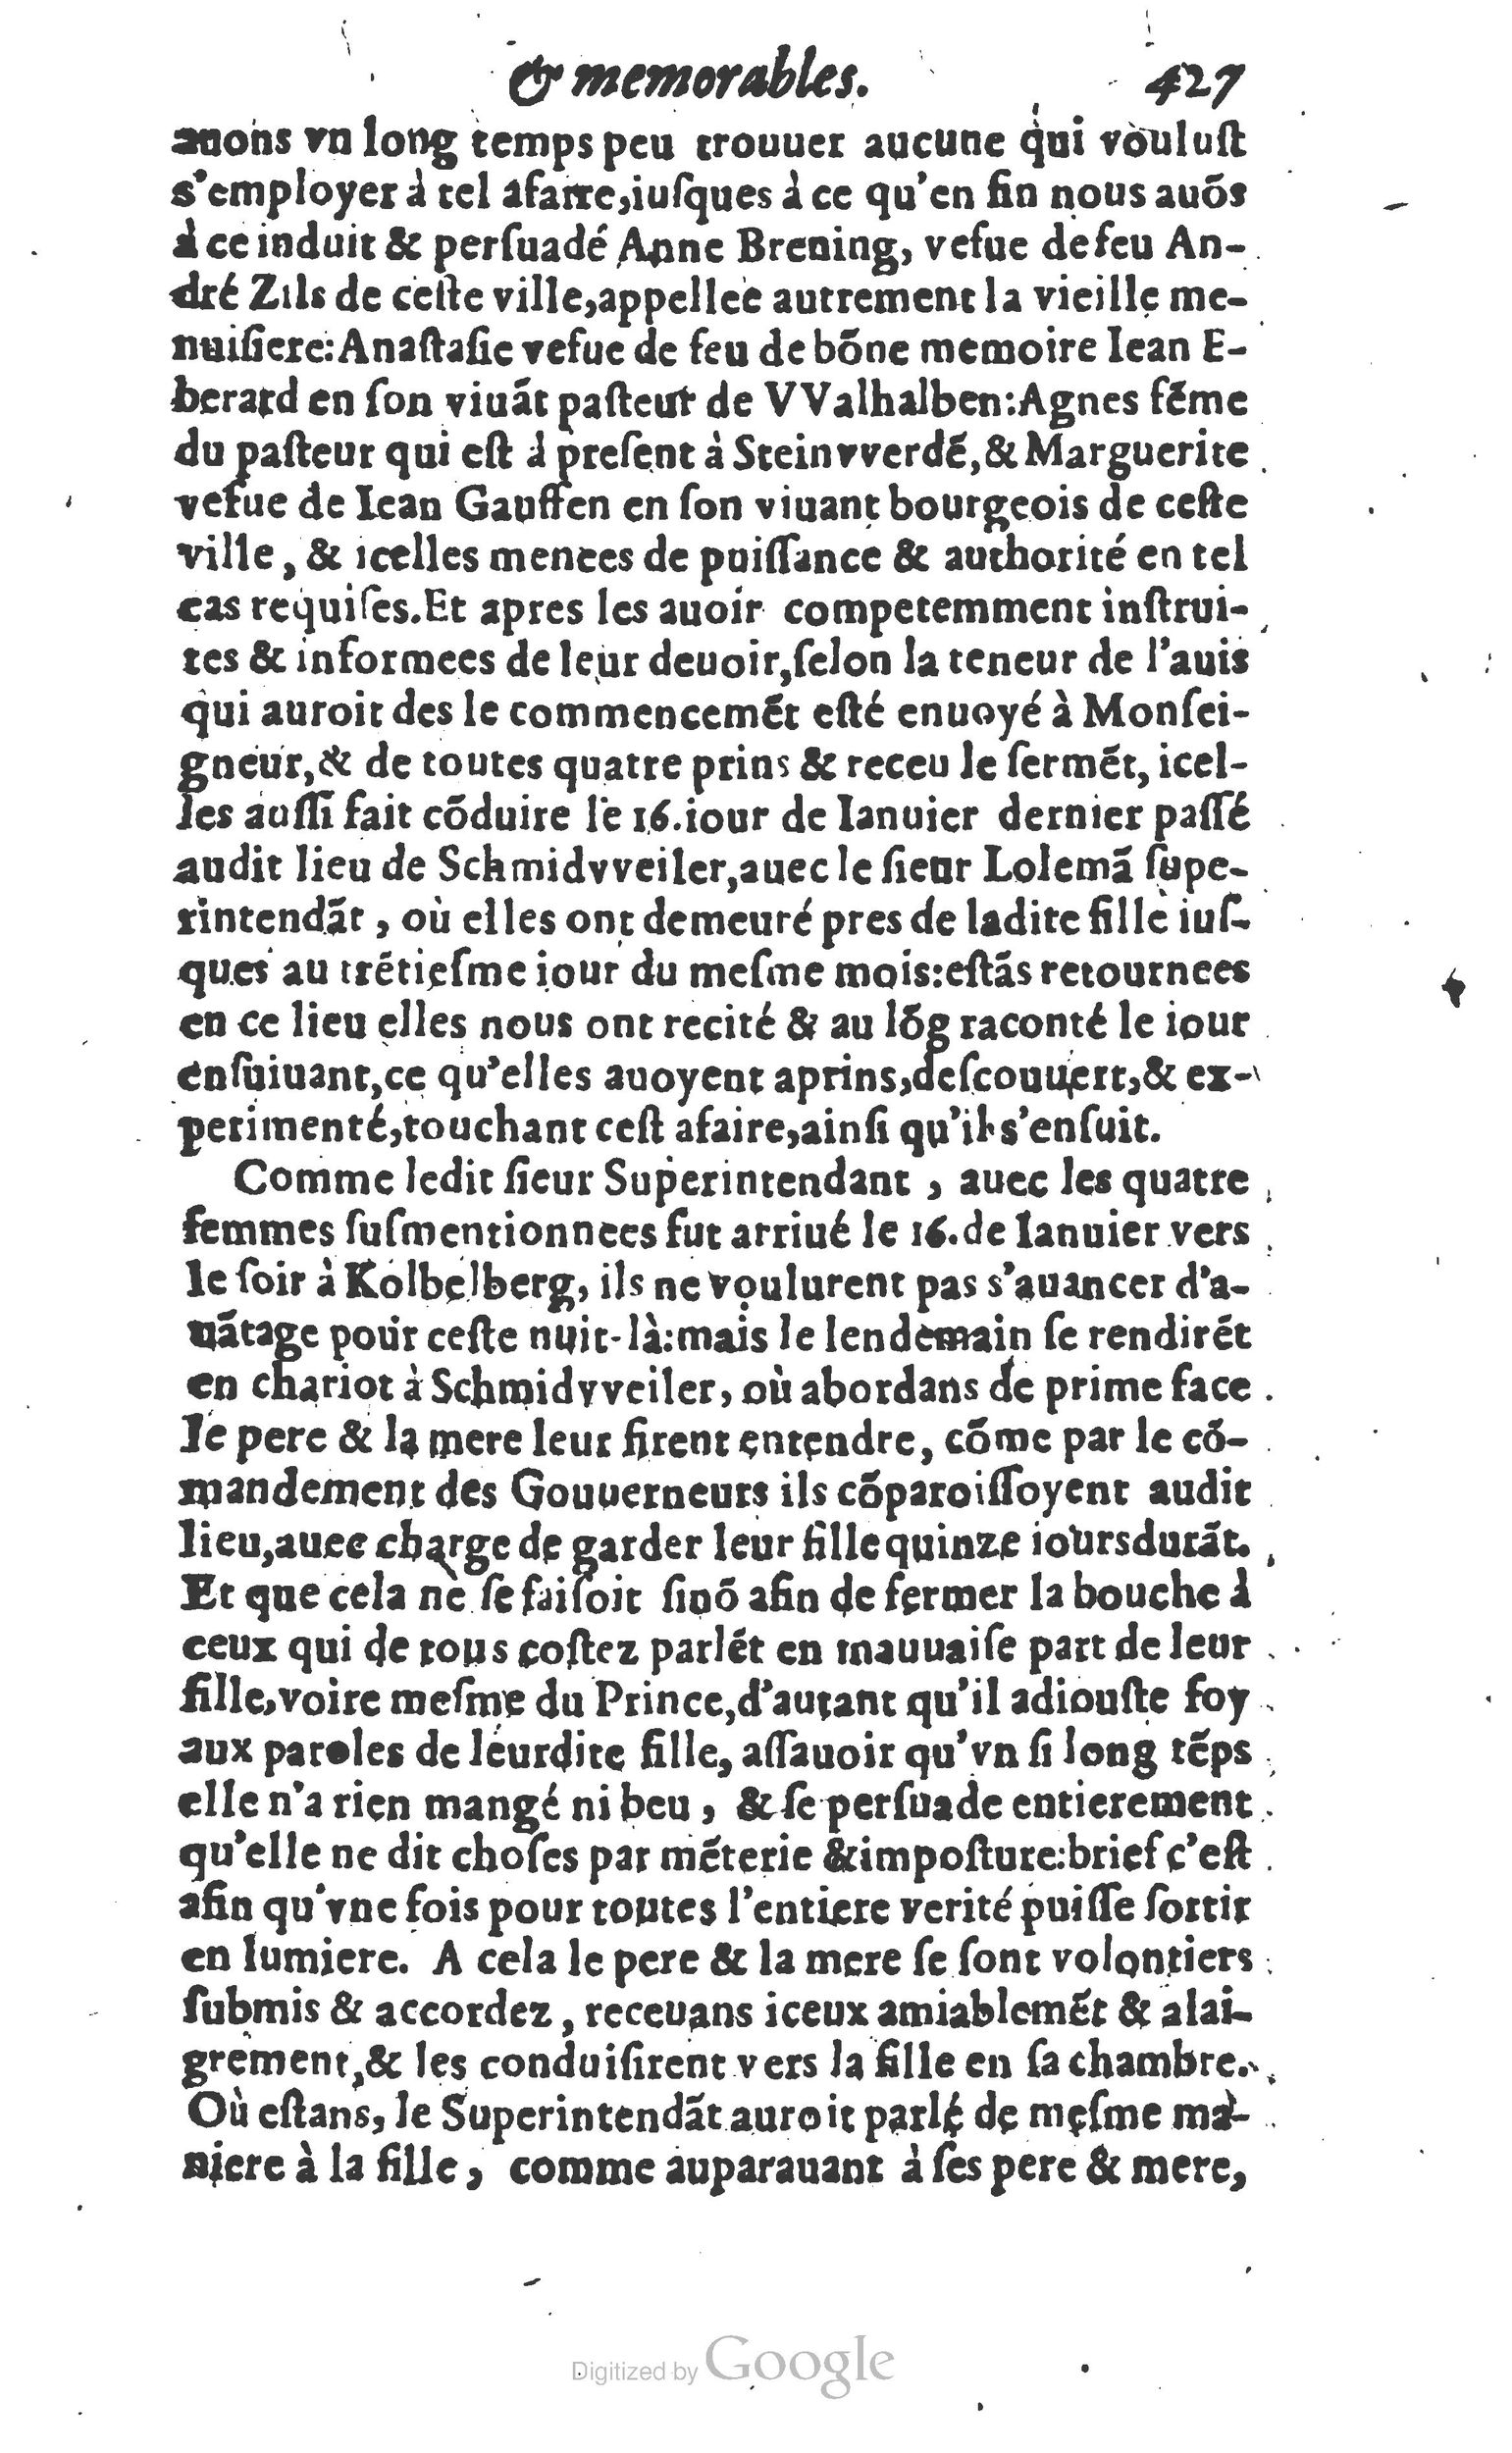 1610 Trésor d’histoires admirables et mémorables de nostre temps Marceau Princeton_Page_0448.jpg